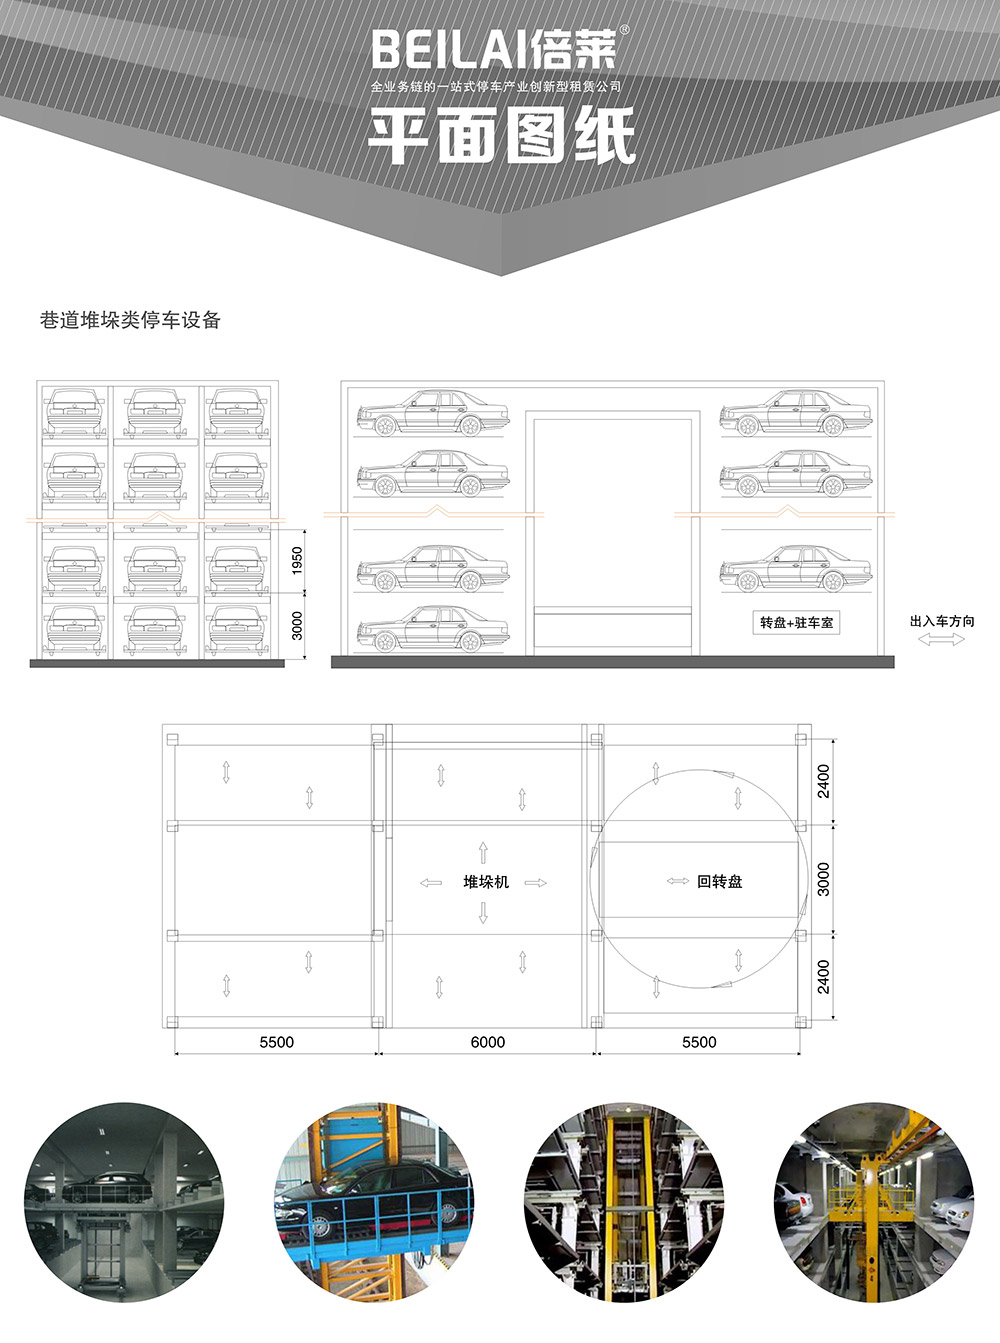 重庆巷道堆垛立体停车设备平面图纸.jpg